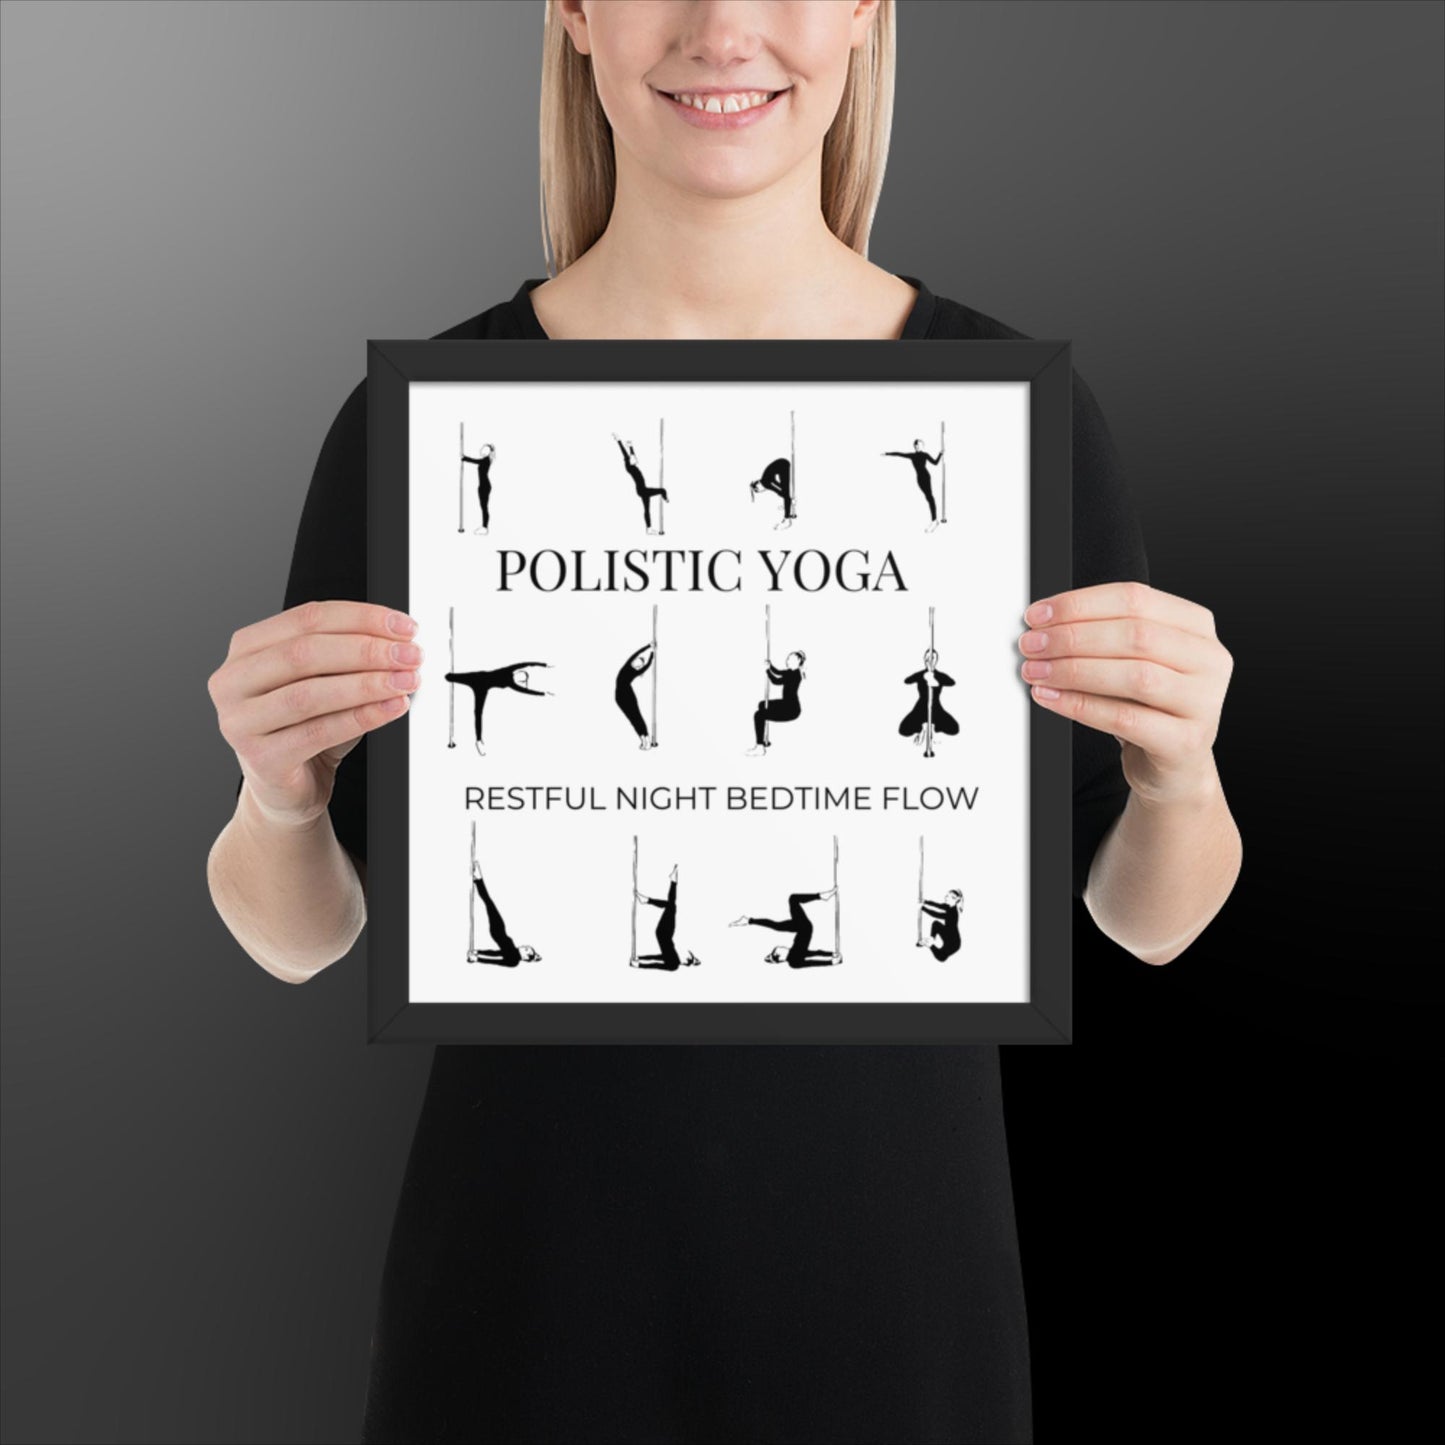 Polistic Yoga Framed Poster; Restful Night